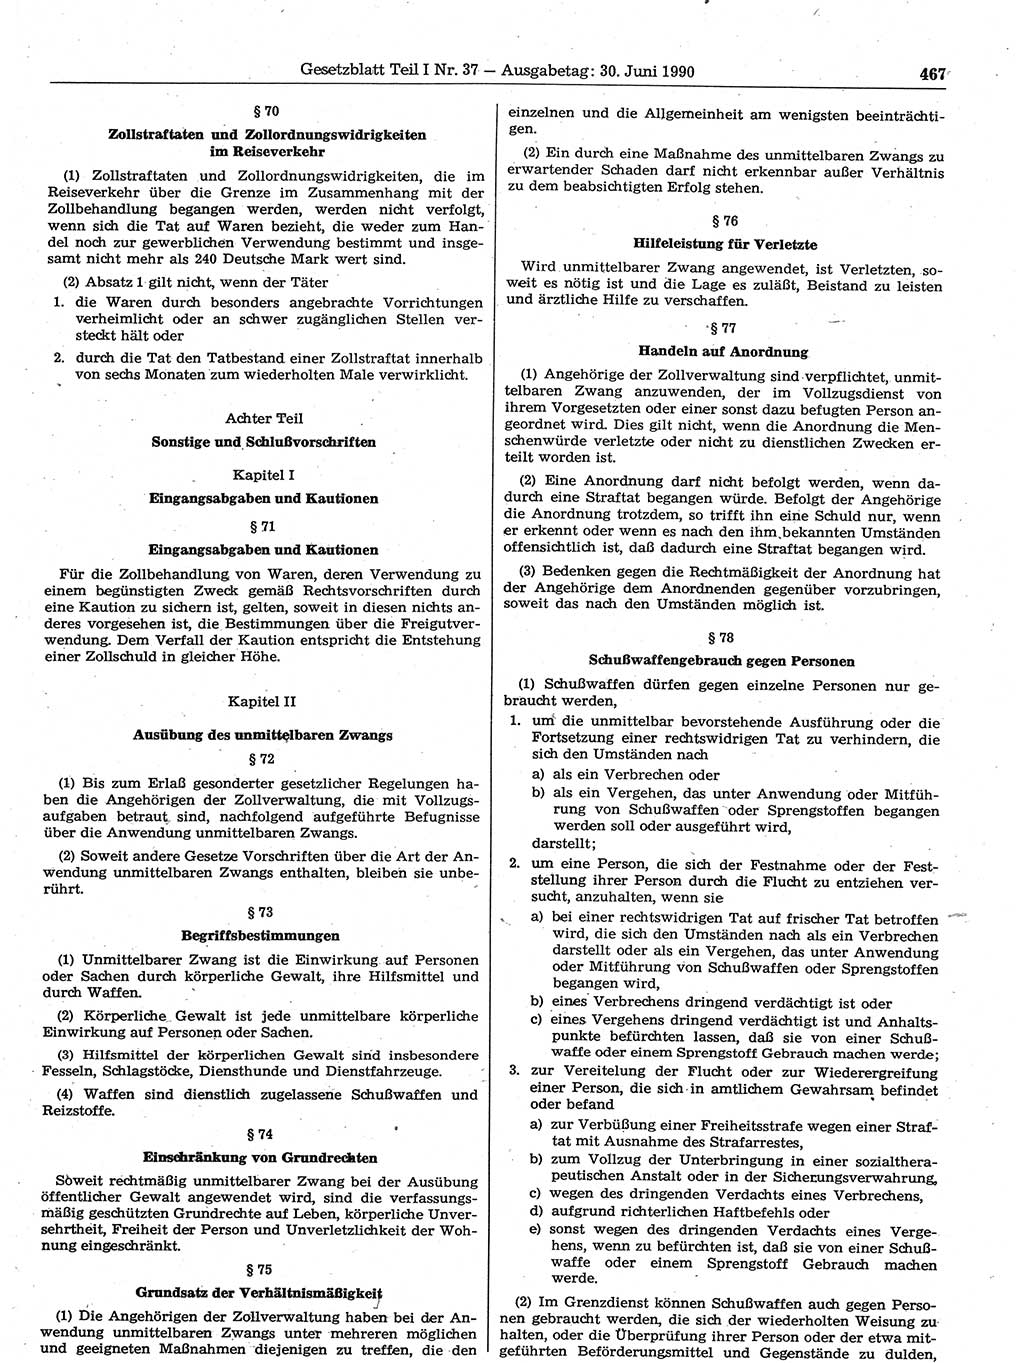 Gesetzblatt (GBl.) der Deutschen Demokratischen Republik (DDR) Teil Ⅰ 1990, Seite 467 (GBl. DDR Ⅰ 1990, S. 467)